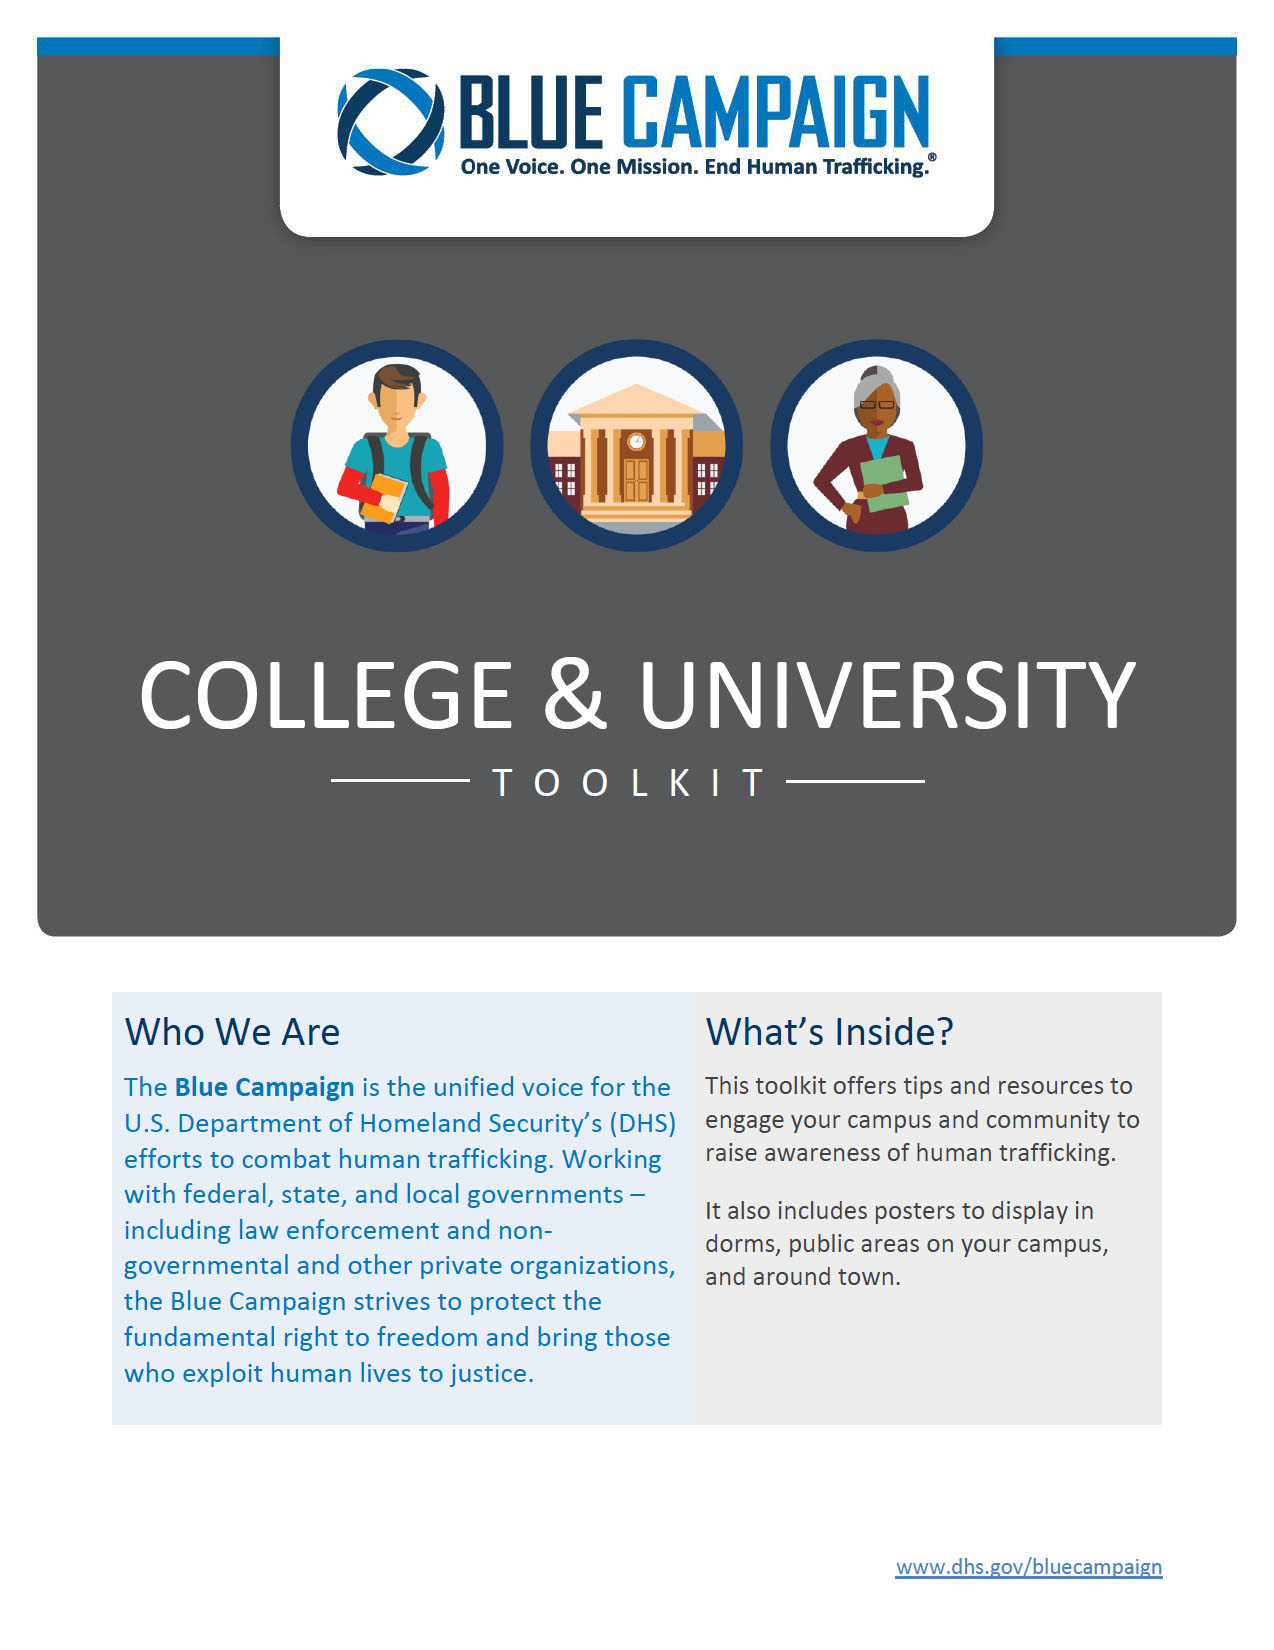 College & University toolkit